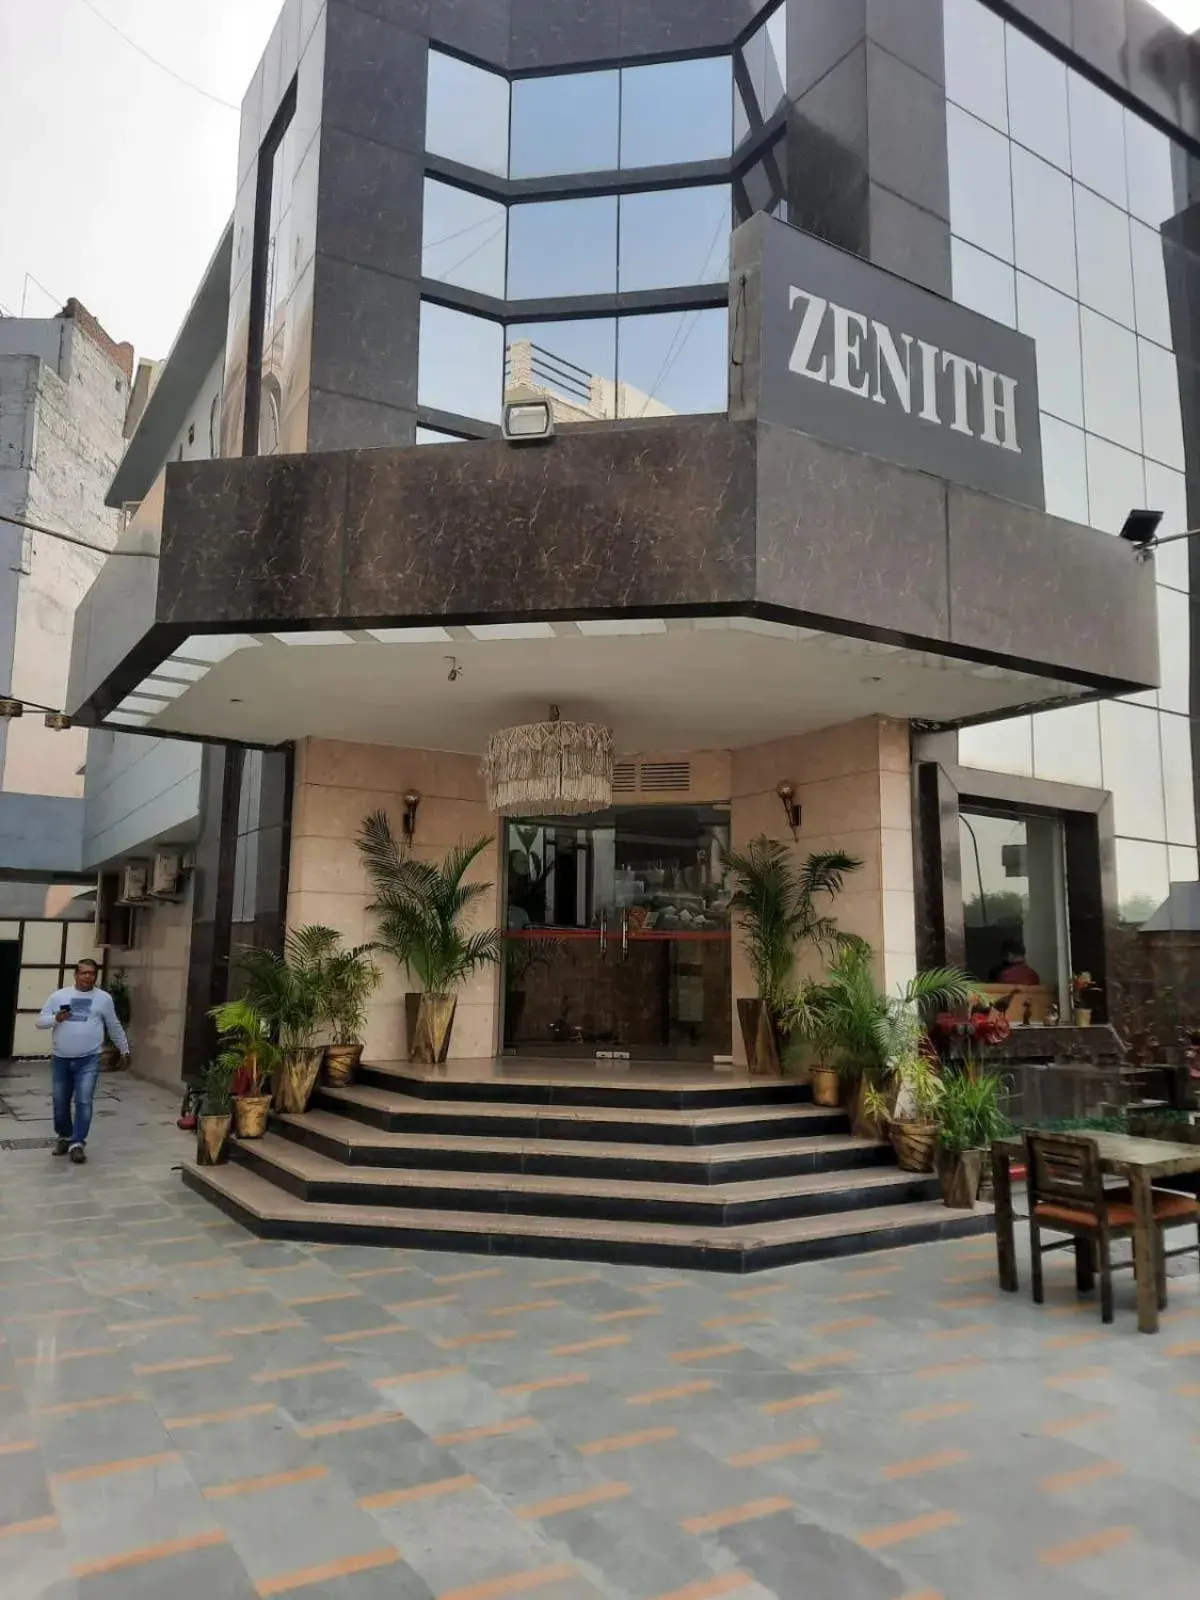 Property Building in Zenith Hotel - Delhi Airport